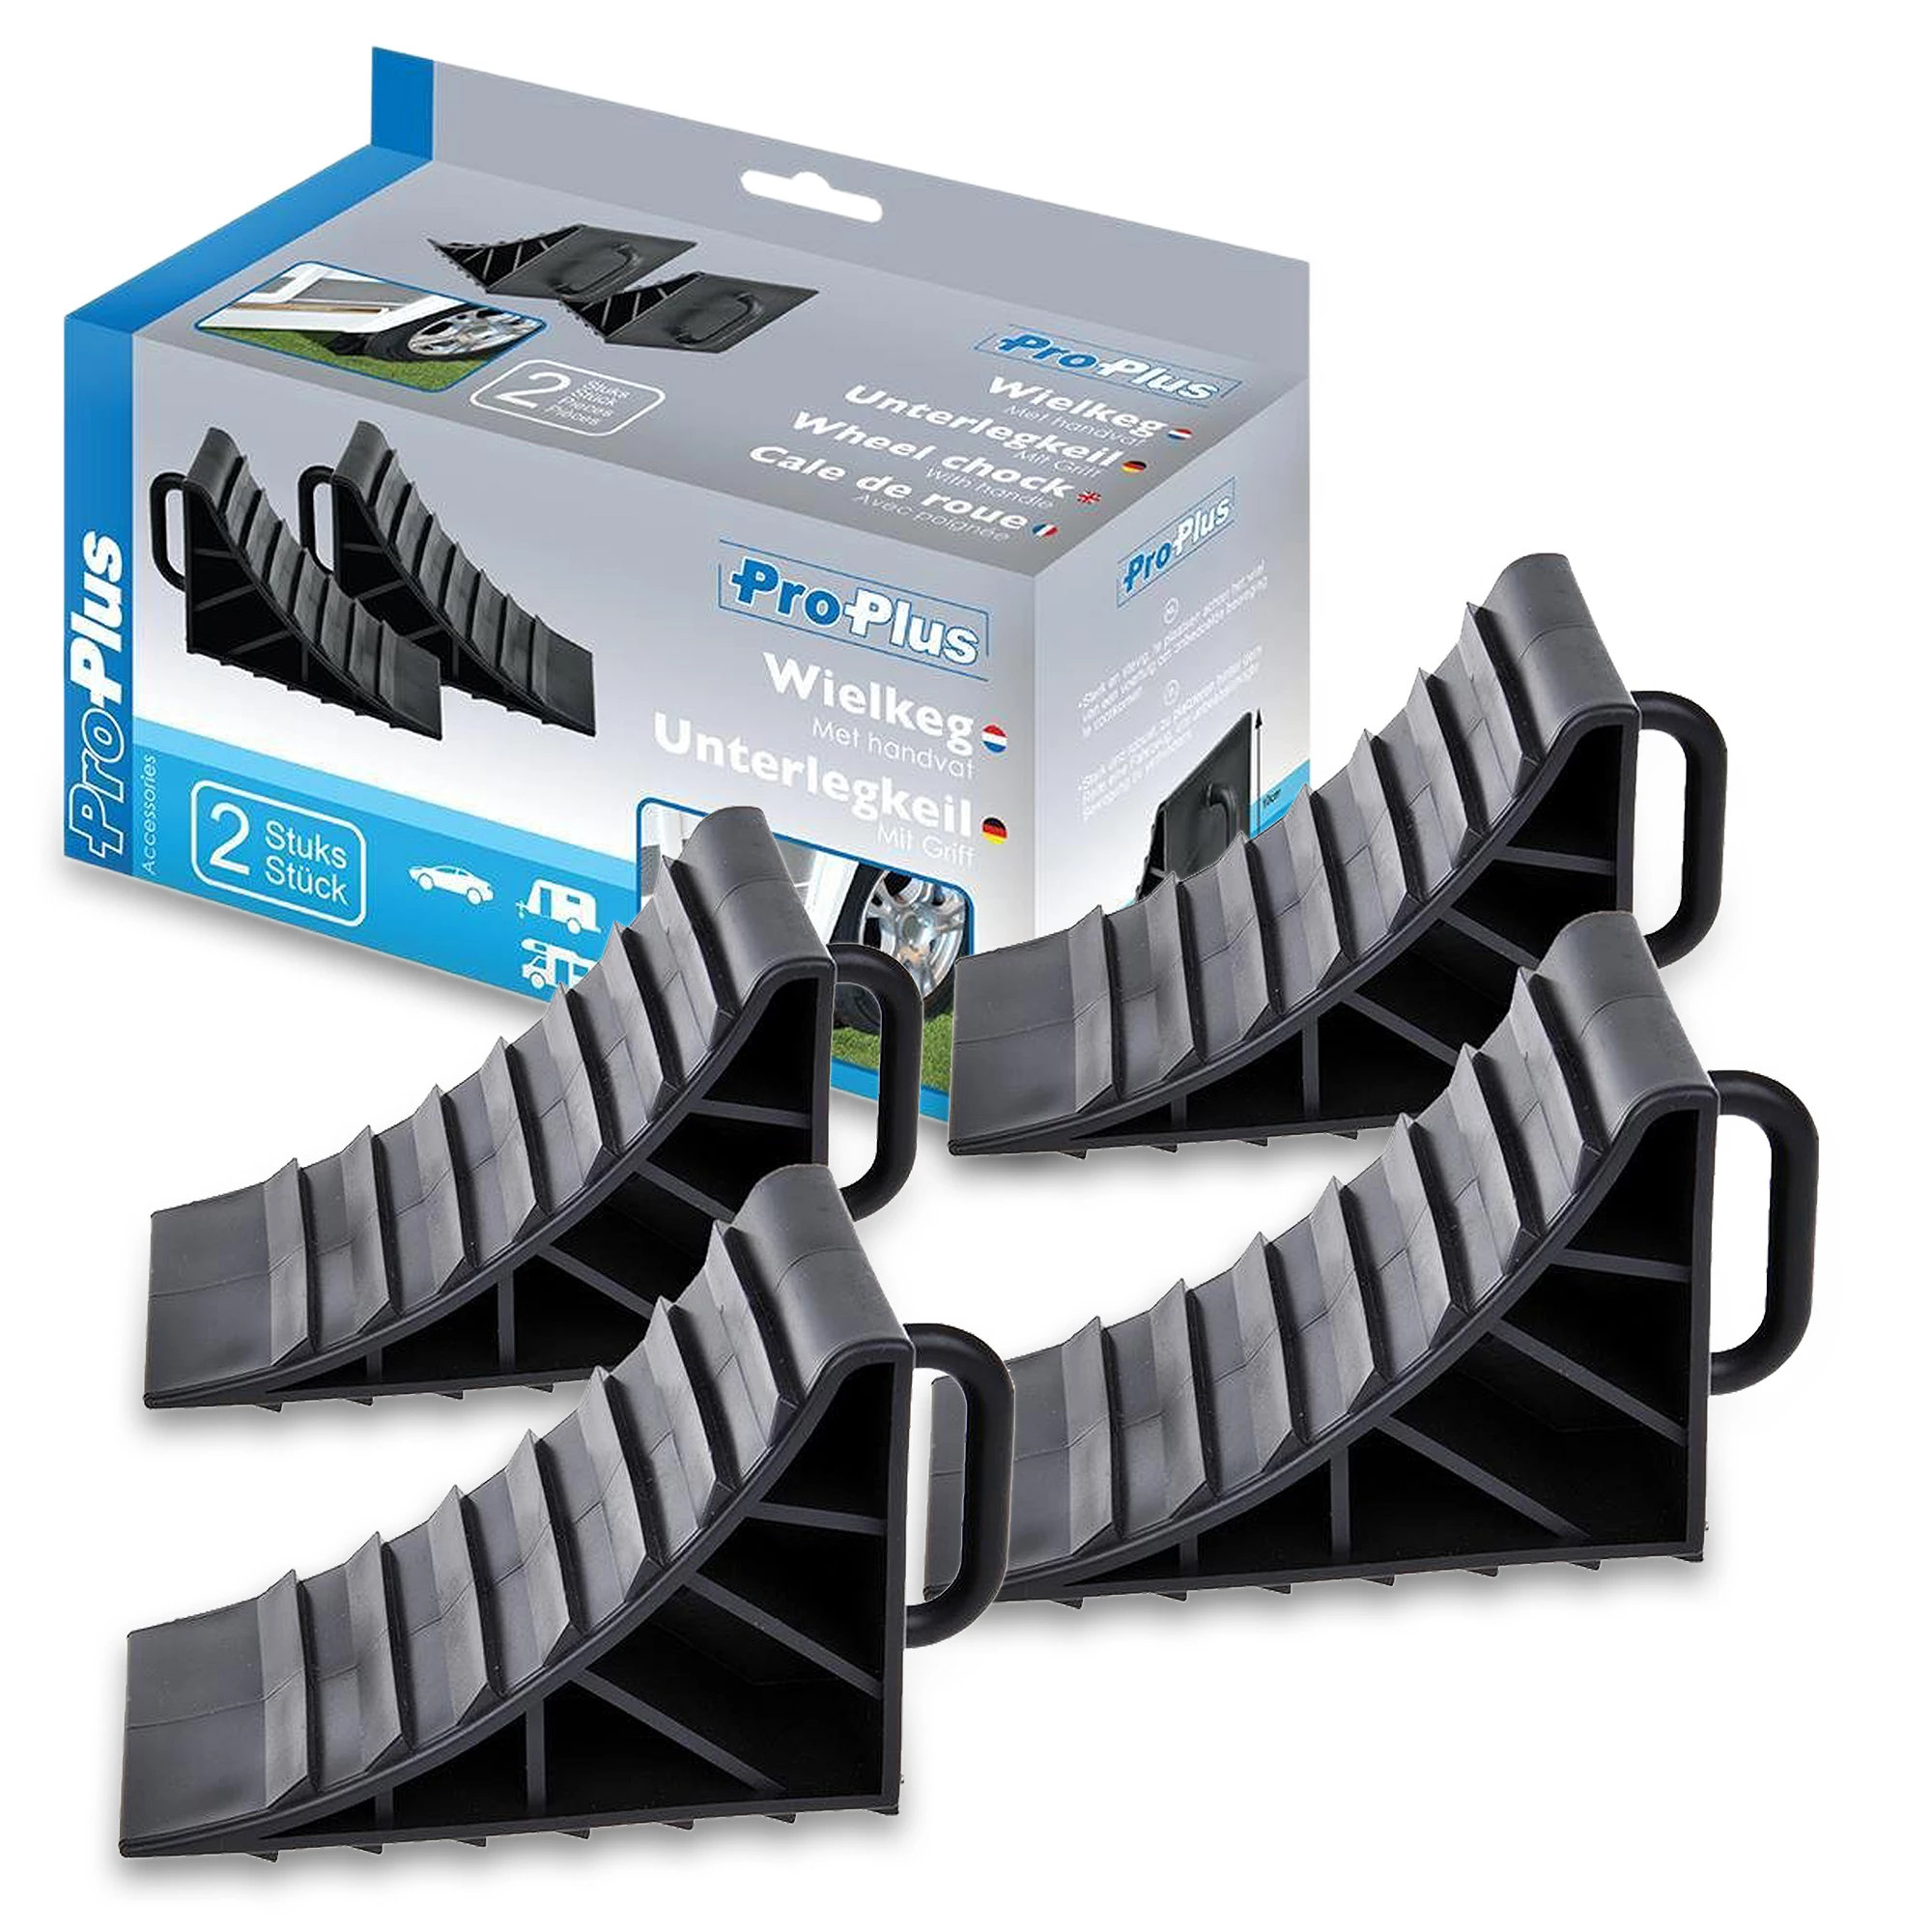 PROPLUS 2x Unterlegkeil Kunststoff mit Griff Set von 2 Stück (4 Stück)  341347 günstig online kaufen